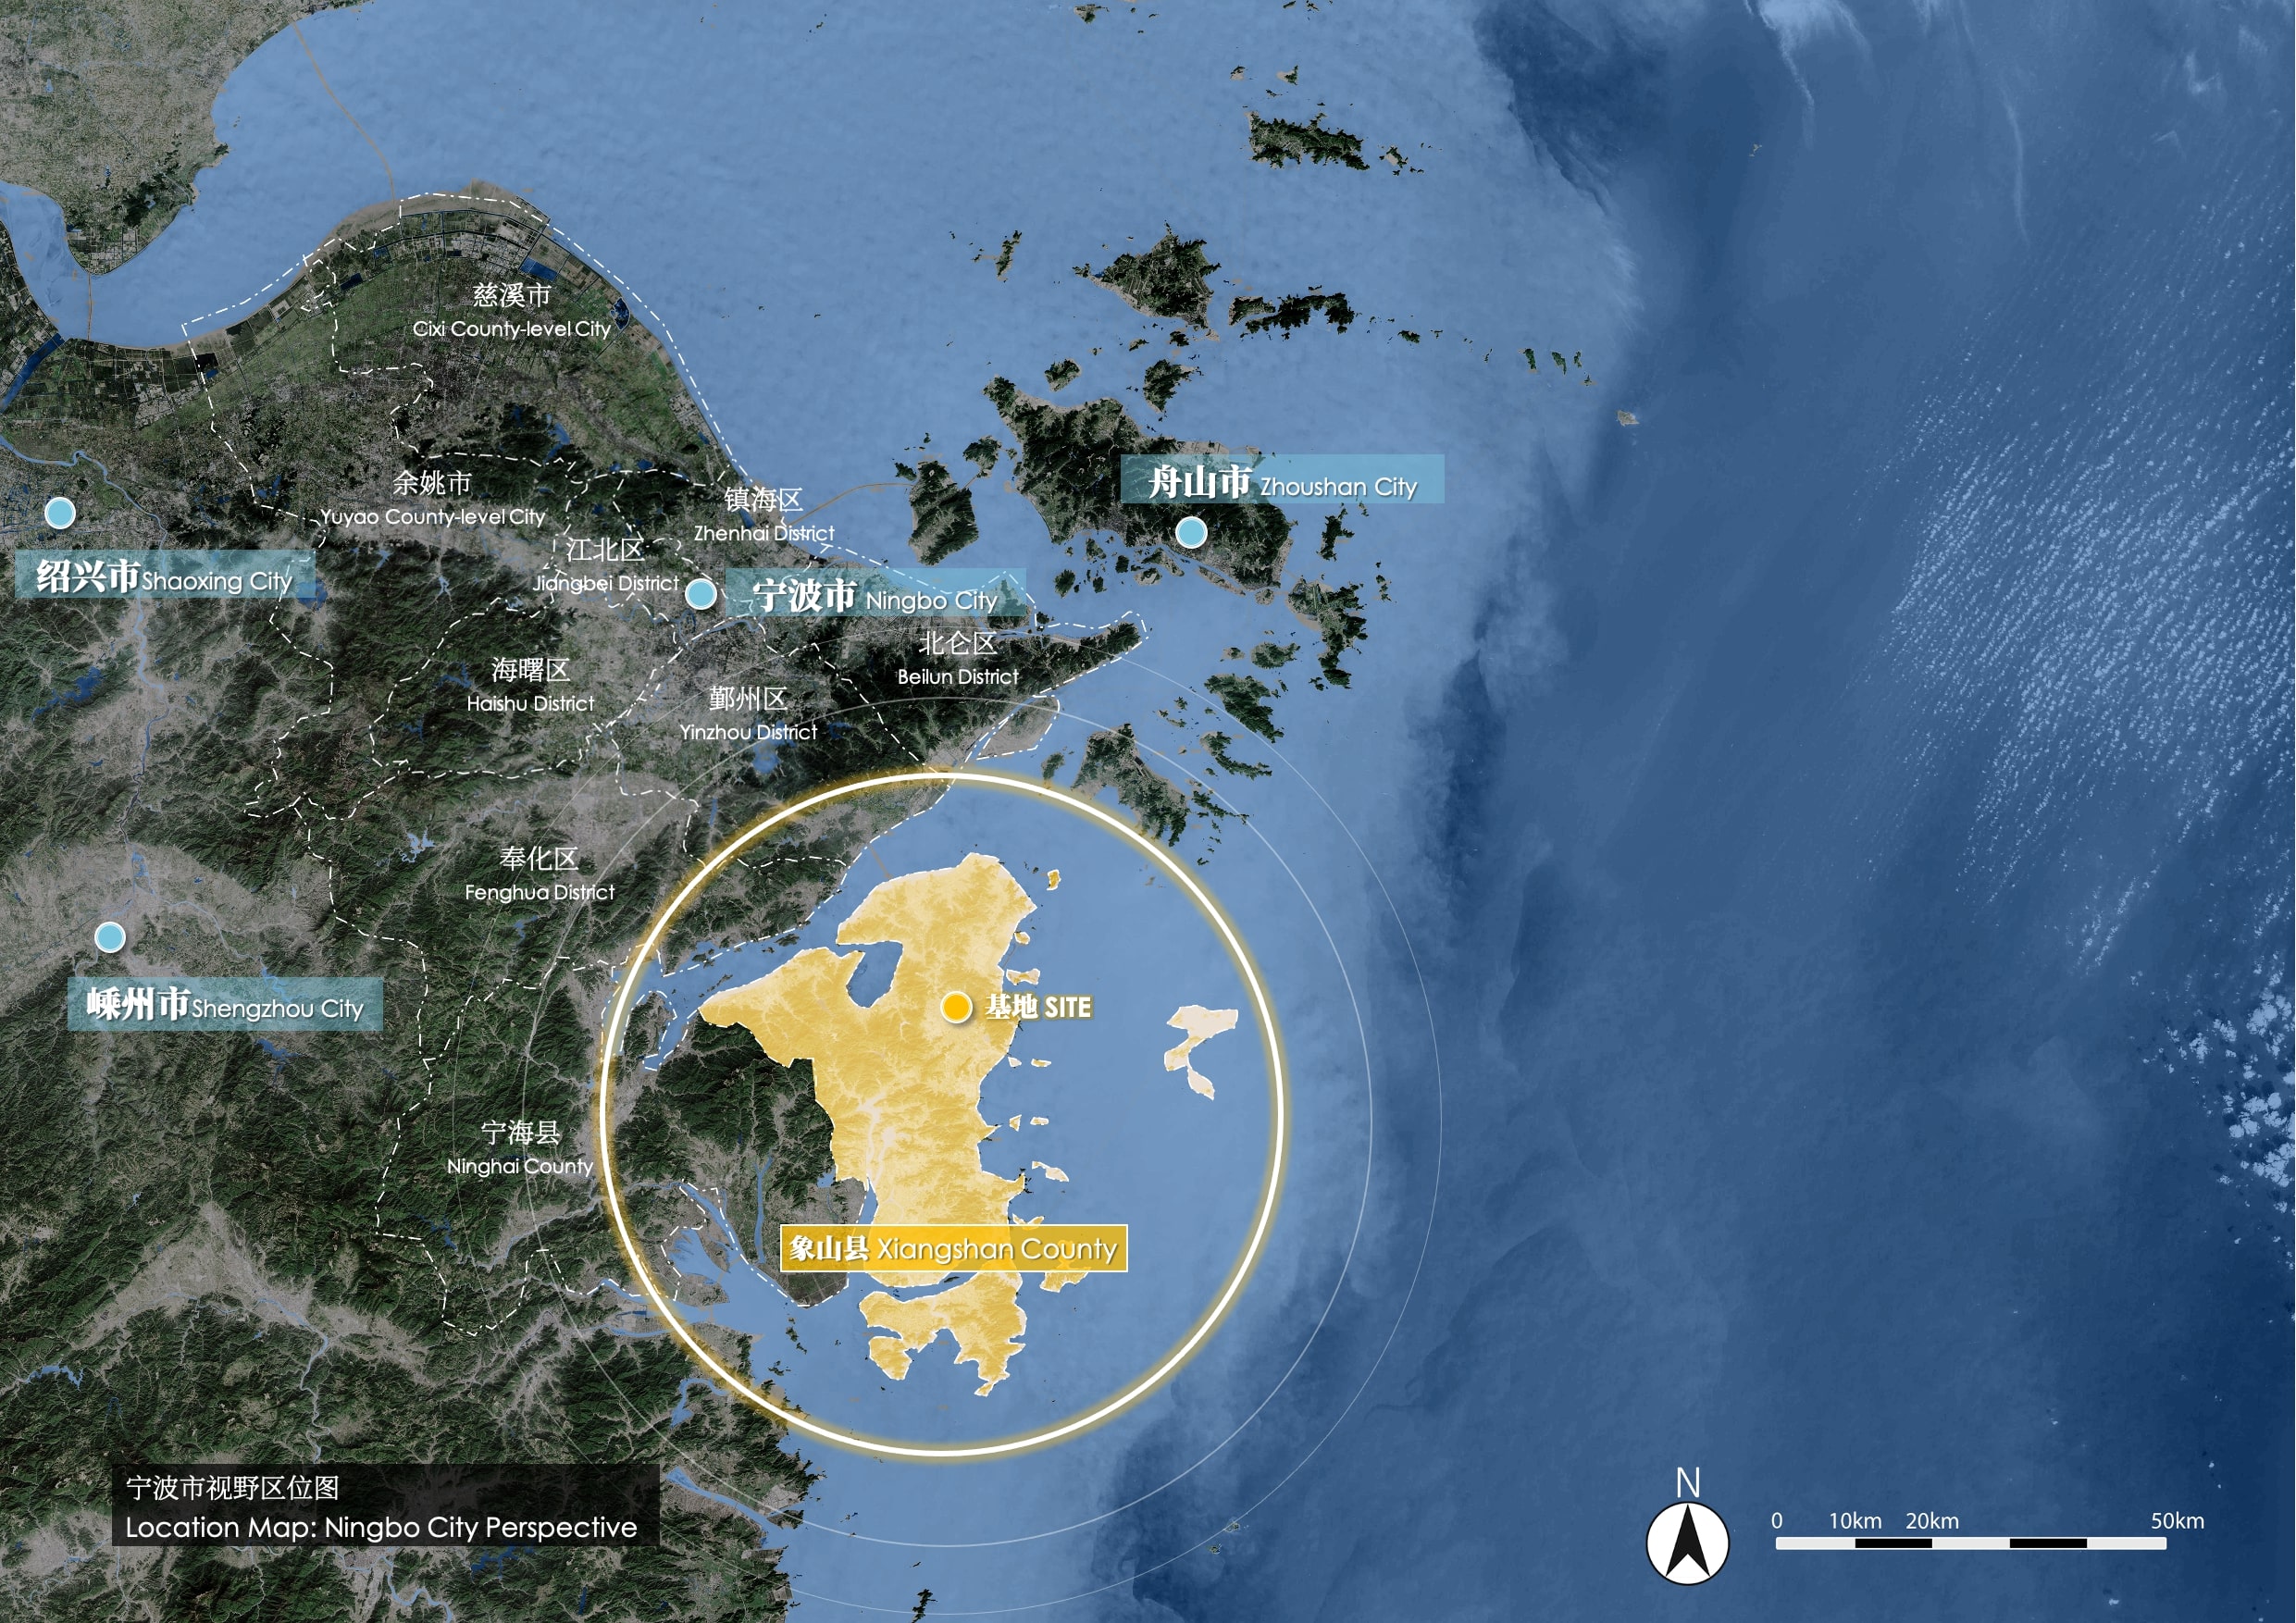 06 宁波市视野区位图 Location Map-Ningbo City Perspective.jpeg